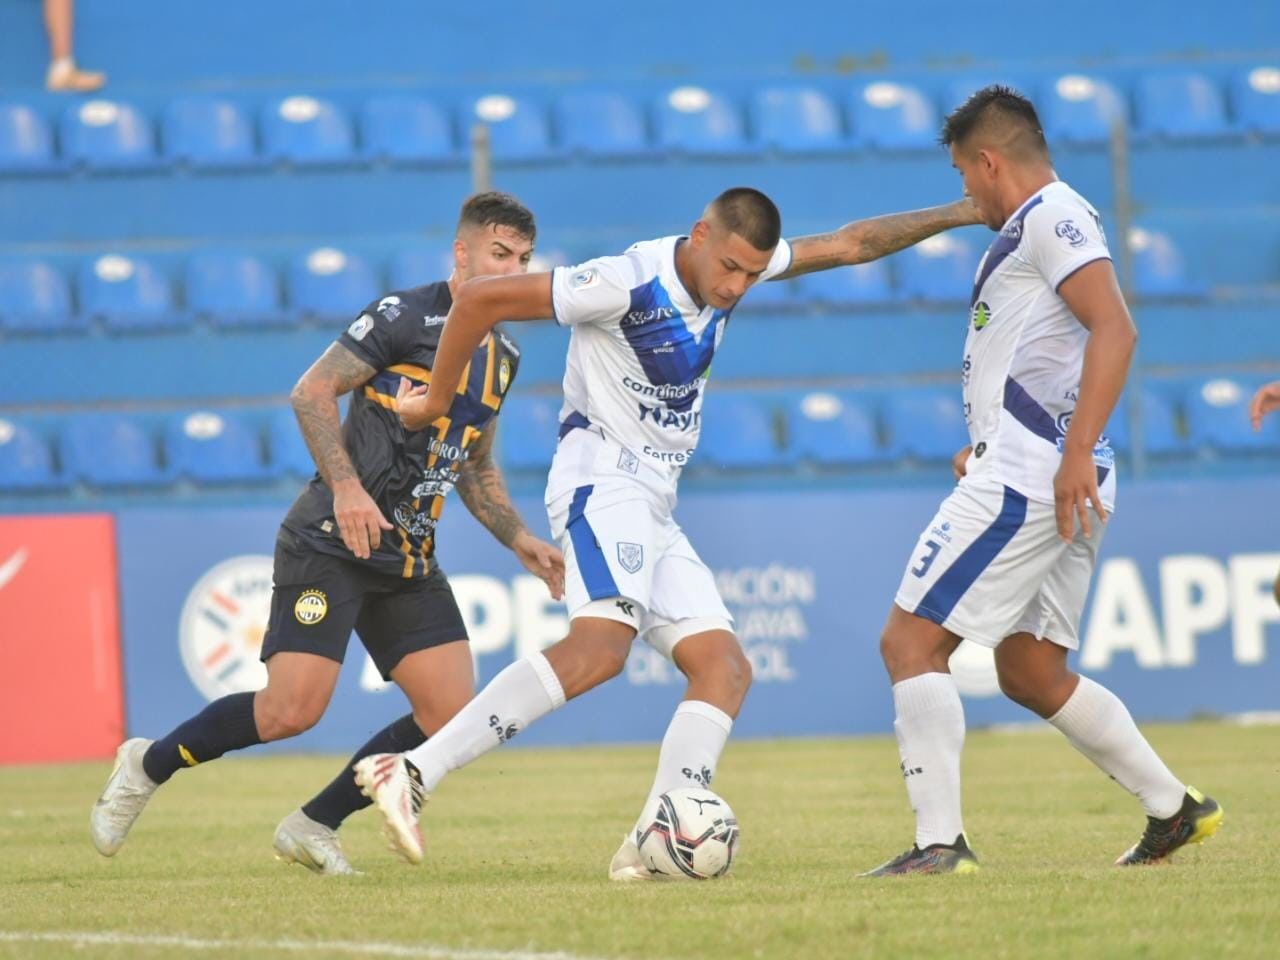 Football Mania - Sportivo Trinidense vs Fernando de la Mora 29/04/2022